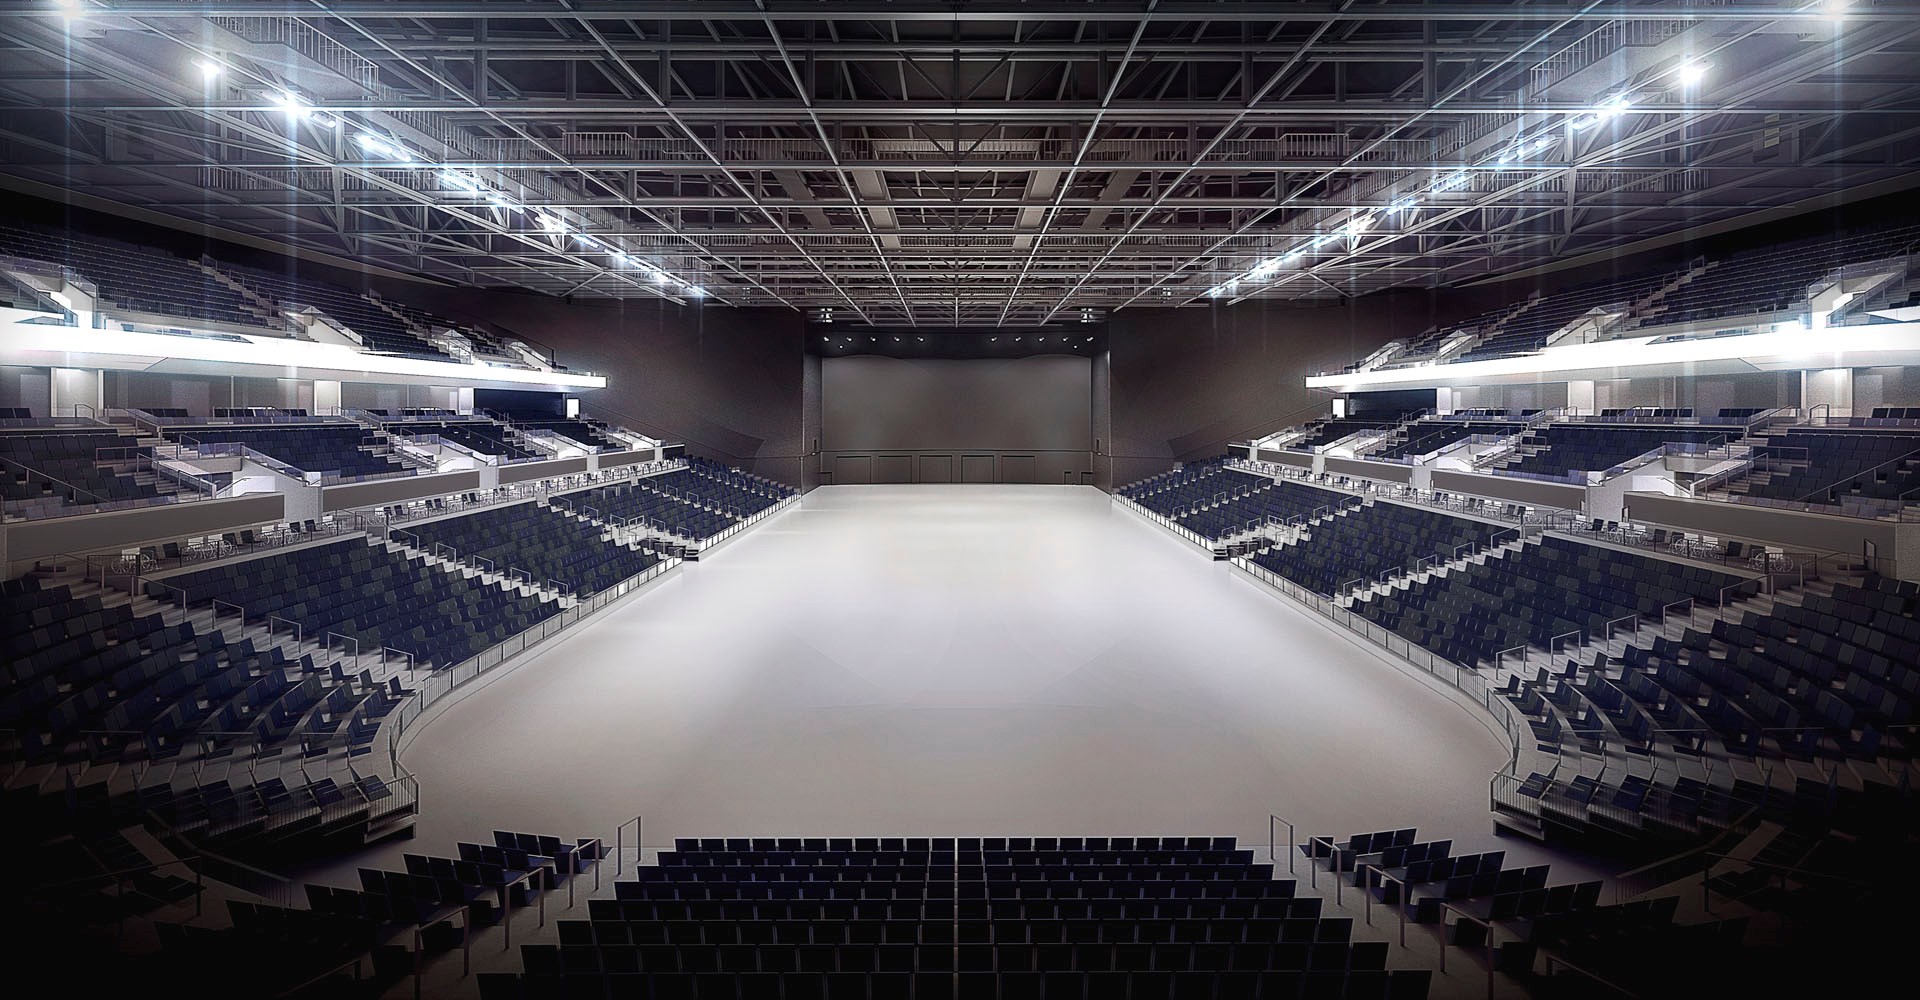 Parametre typisk Specialitet Royal Arena åbner | Dortes Smadderkasse